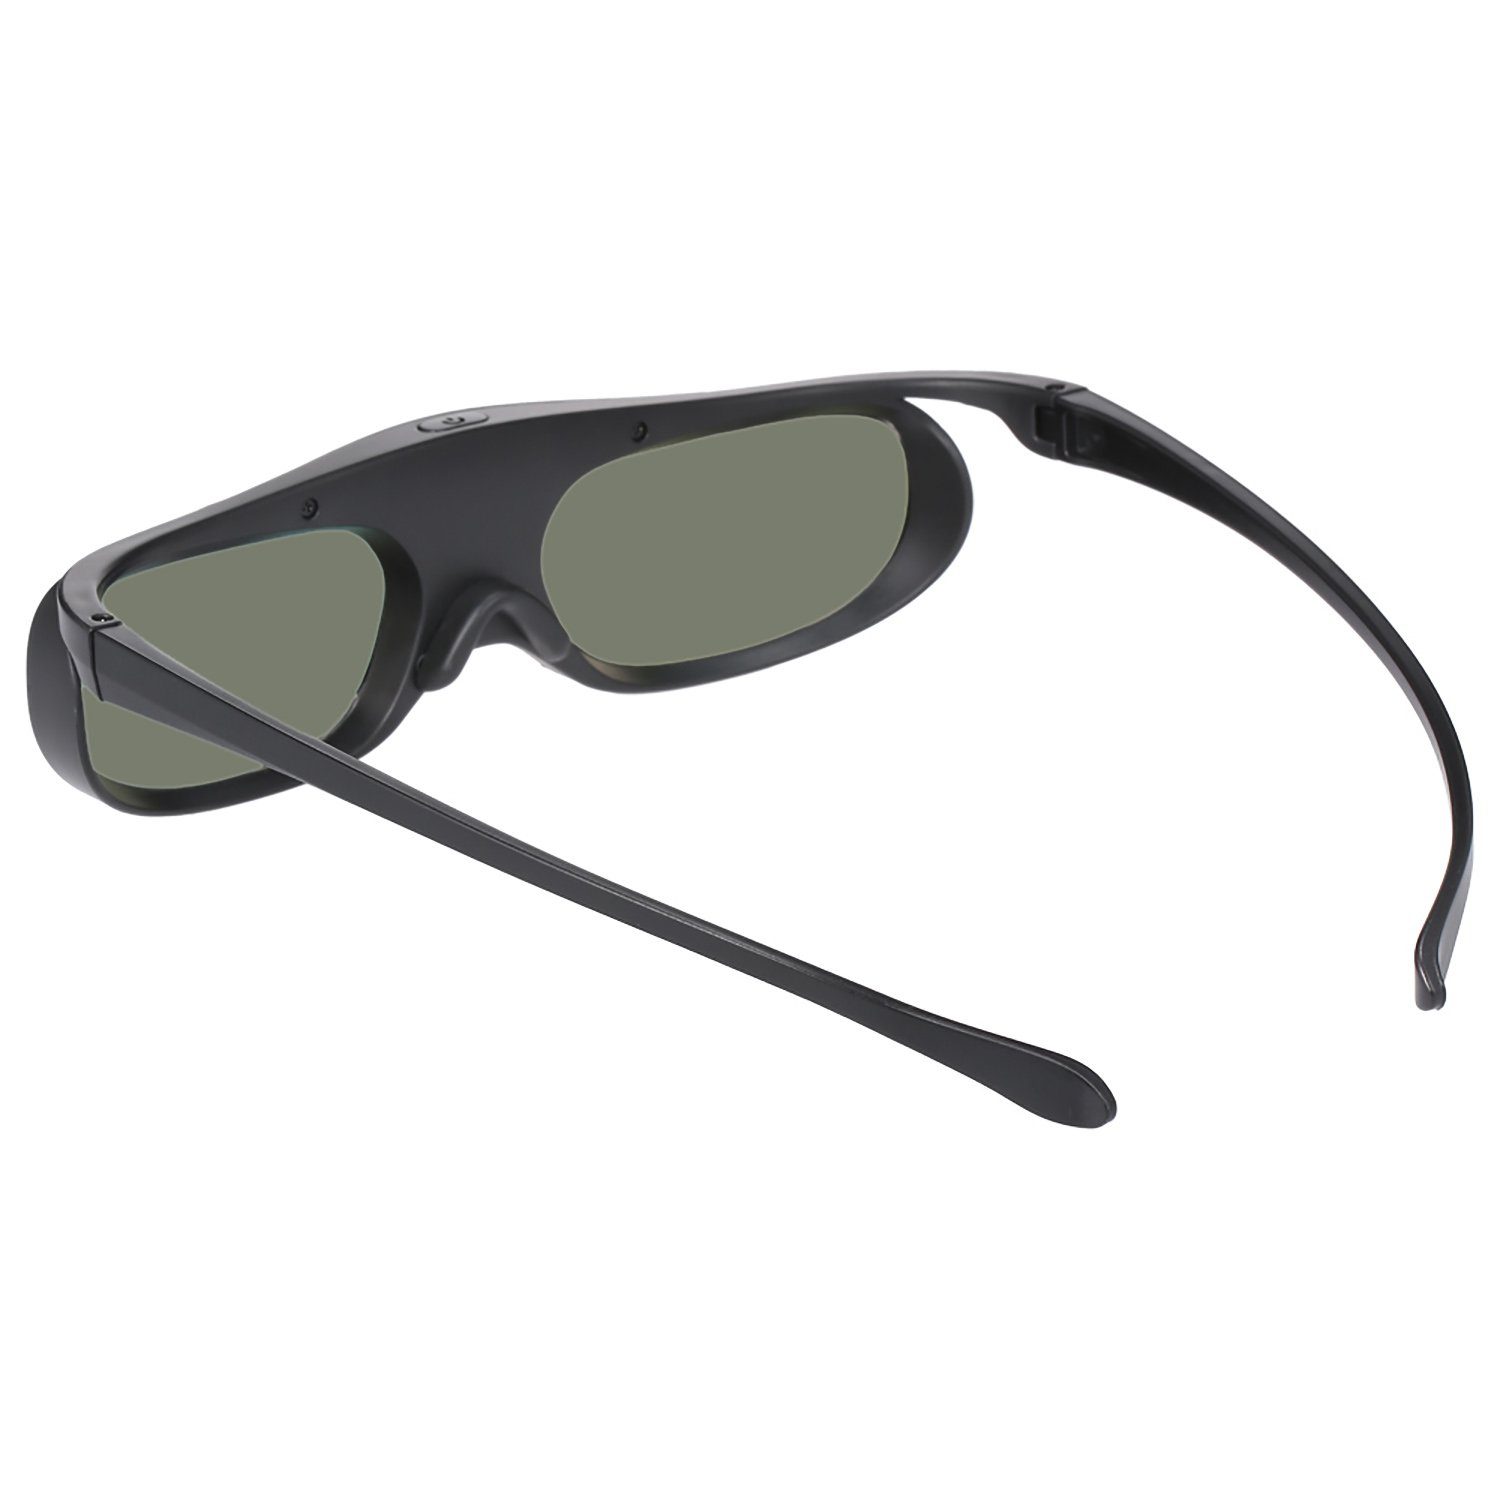 Link Stück Aktive mit 1 Schwarz 3D Brille, Beamer, 3D-Brille kompatibel DLP TPFNet 3D wiederaufladbare - - DLP Shutterbrille